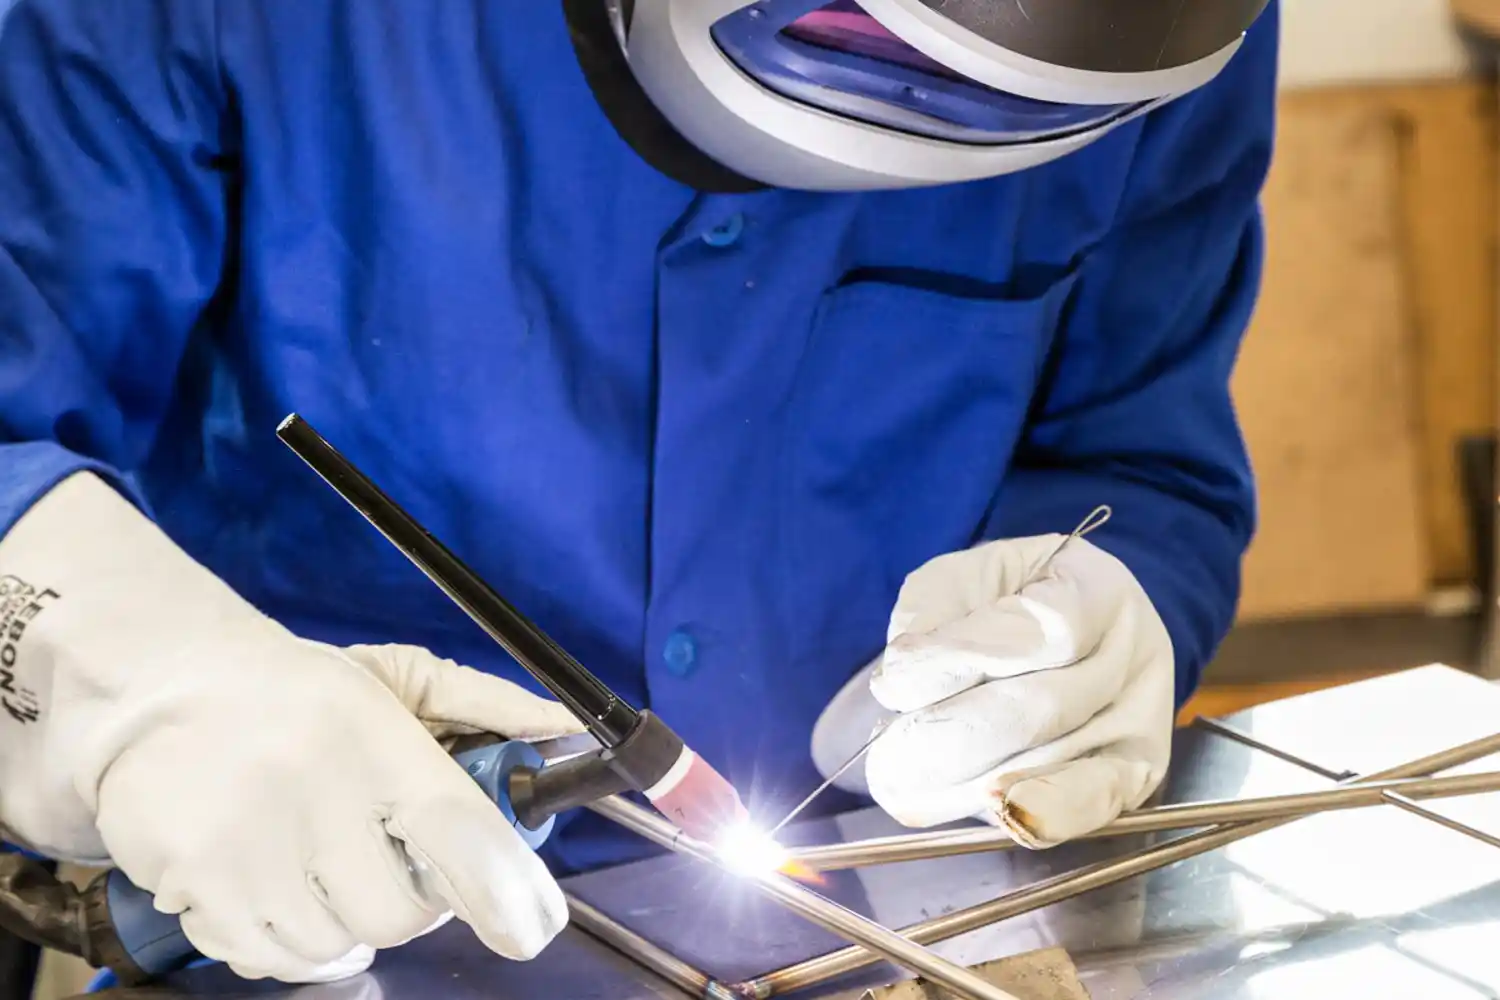 Un technicien réalise de la soudure sur métaux avec un chalumeaux. Photographie de reportage industriel